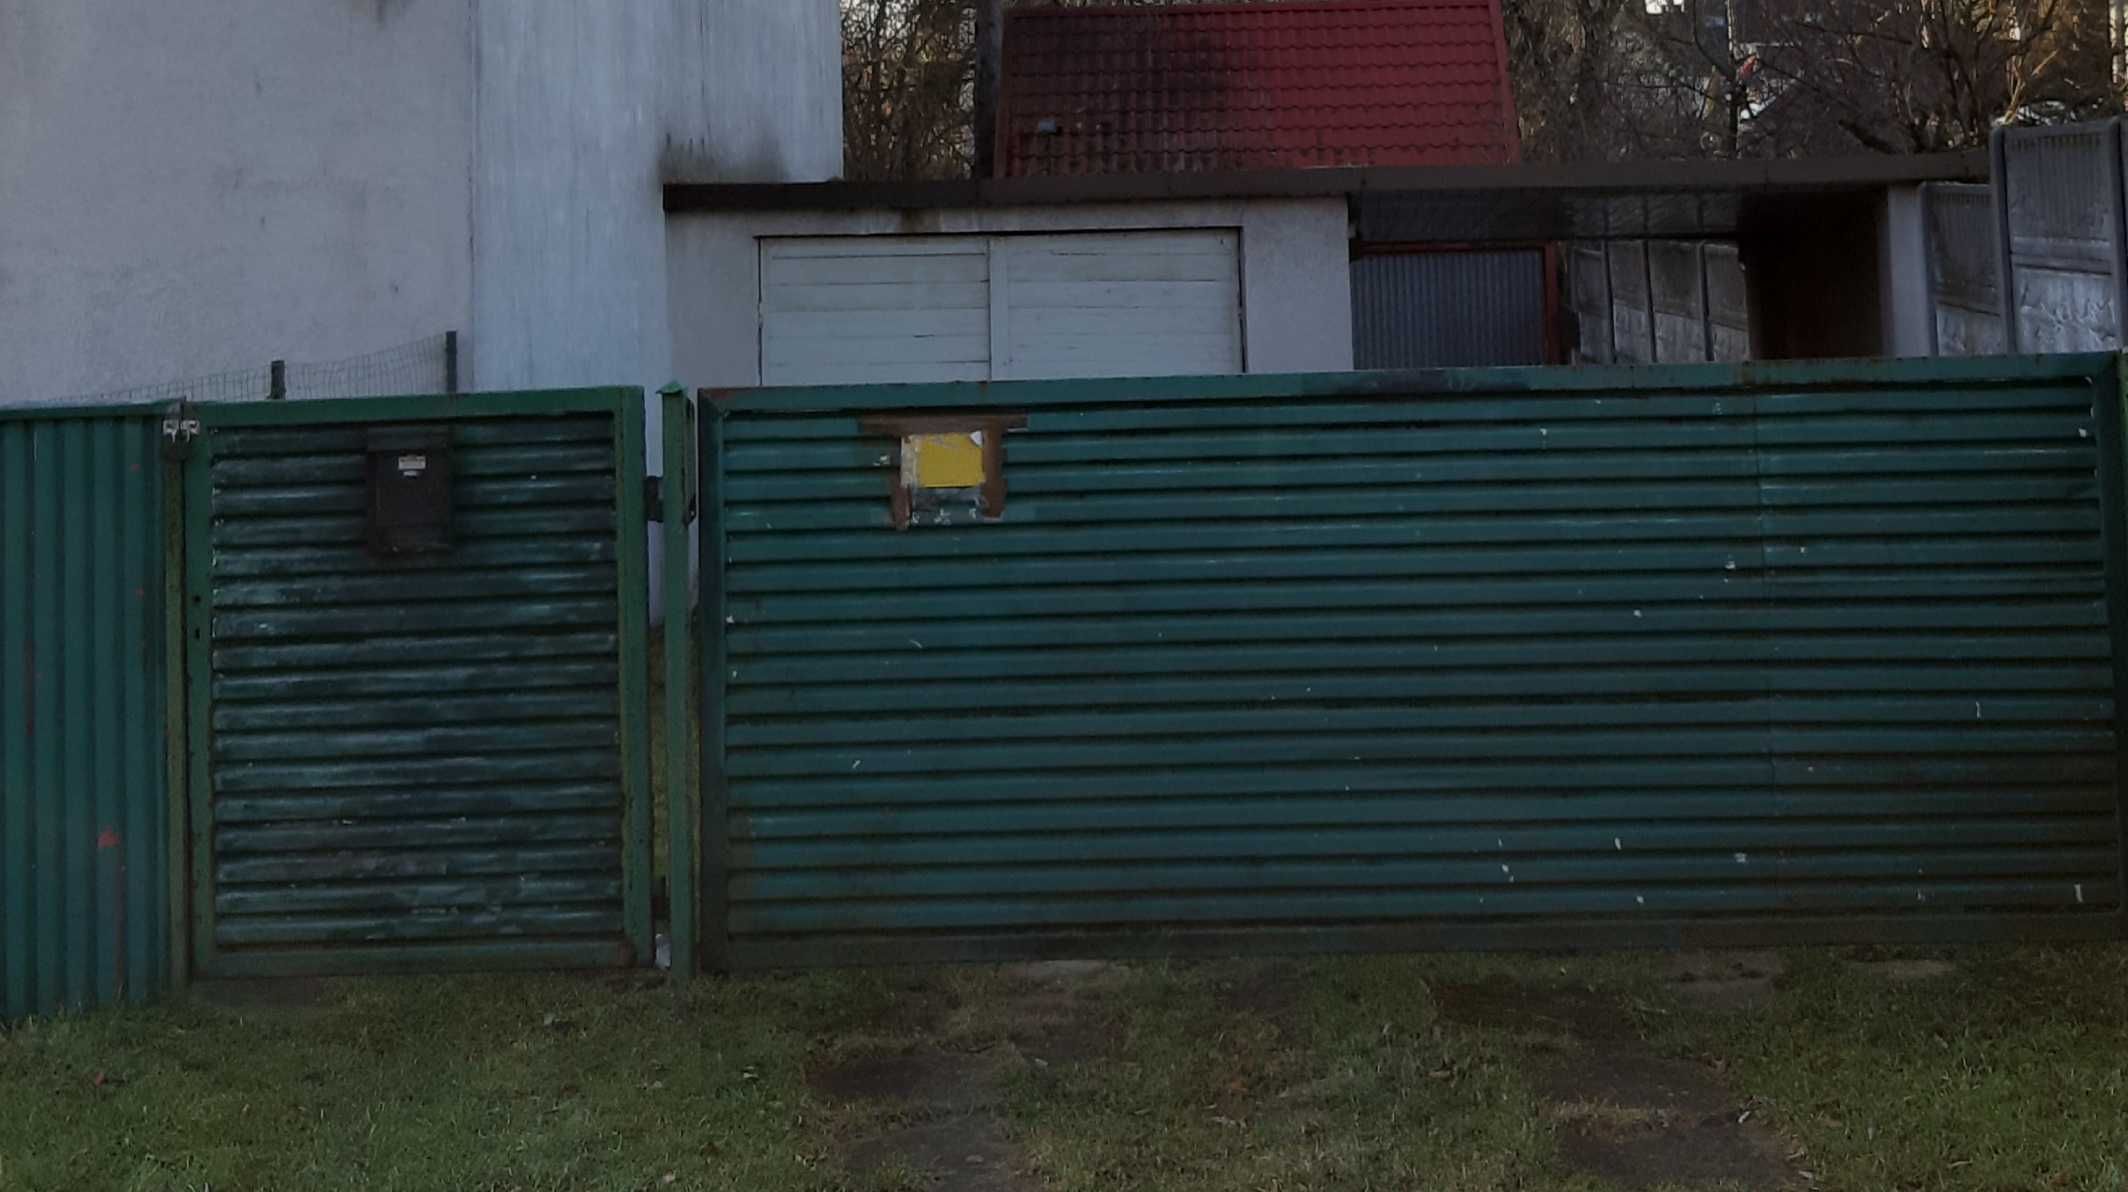 Garaż, miejsca postojowe do wynajęcia Katowice-Panewniki oś Kokociniec